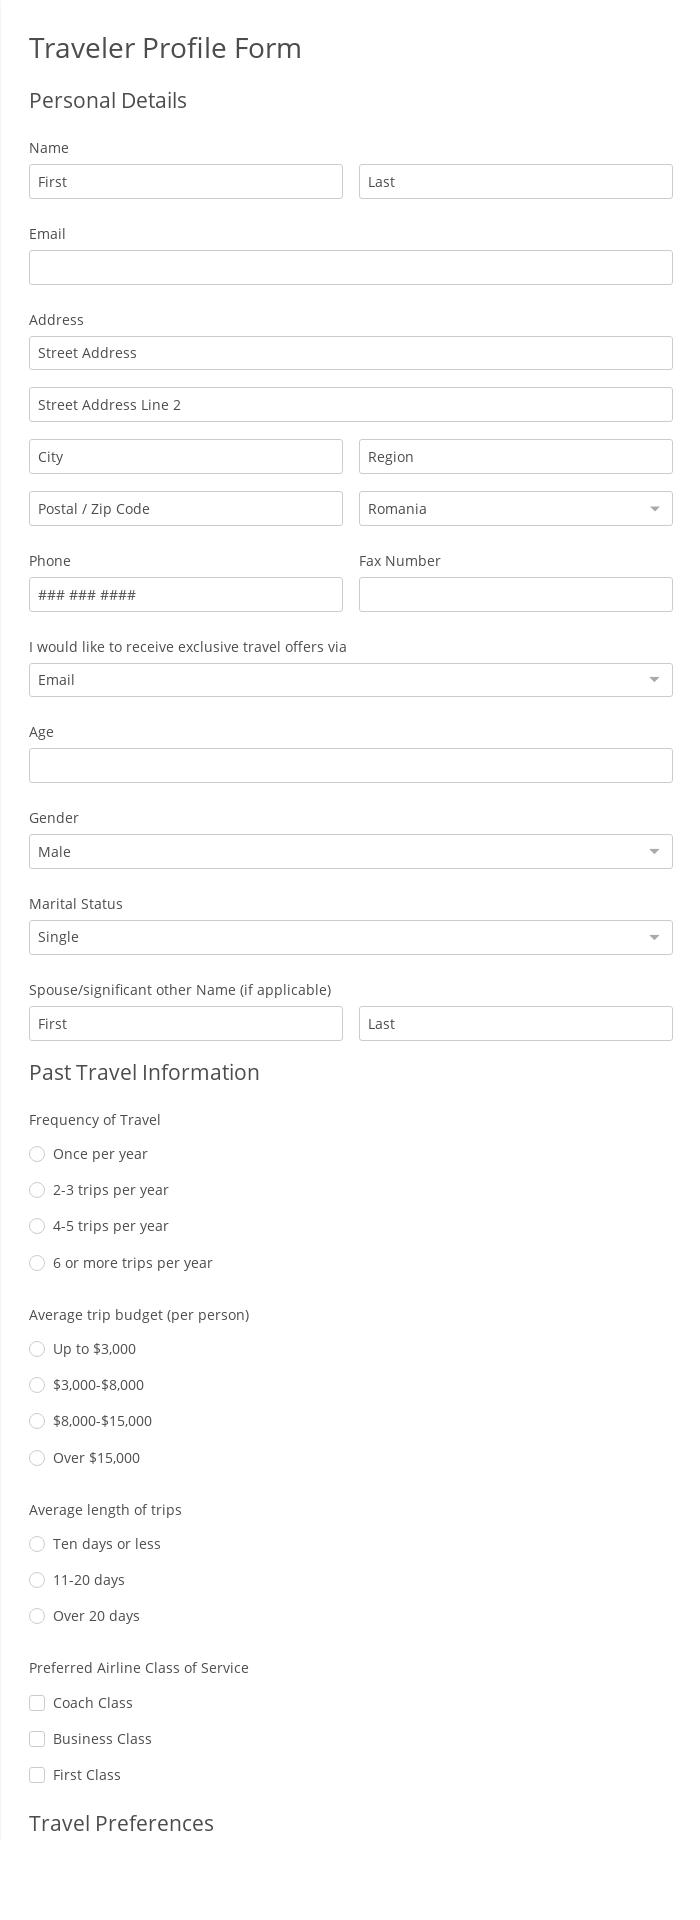 traveler-profile-form-template-123formbuilder